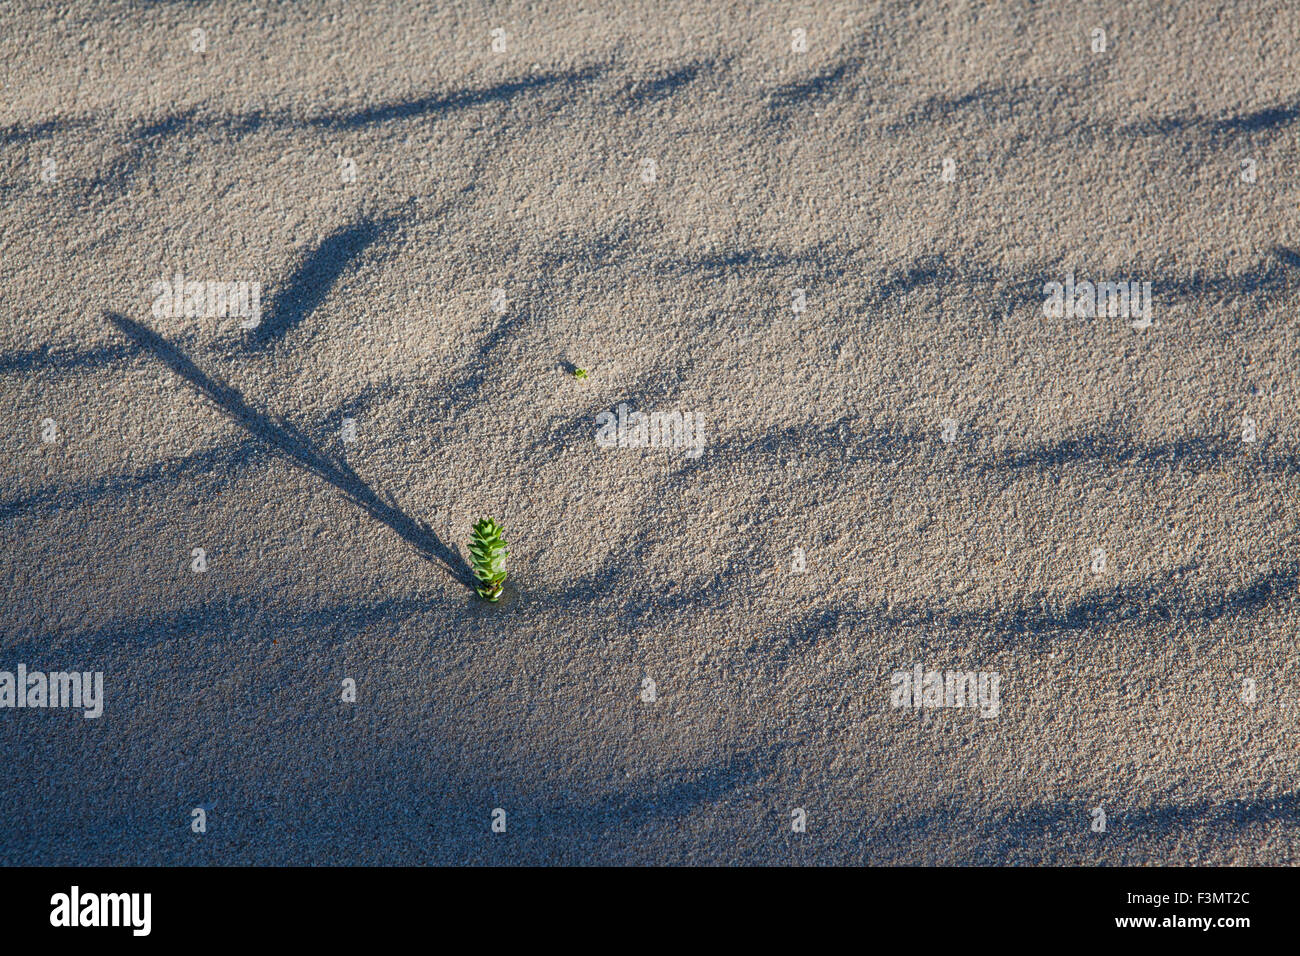 Verde piccola pianta che esce dalla sabbia Foto Stock